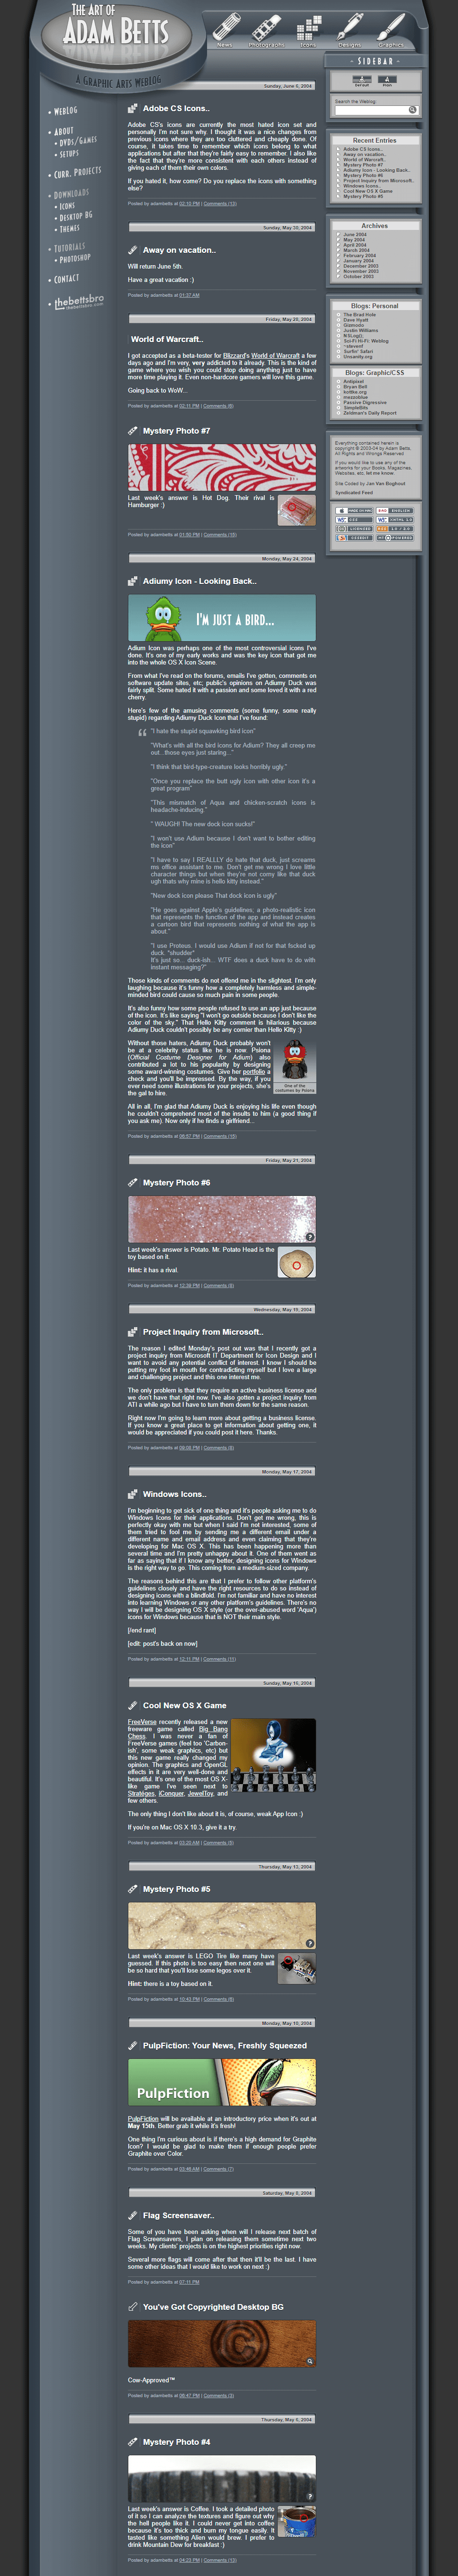 The Art of Adam Betts website in 2004